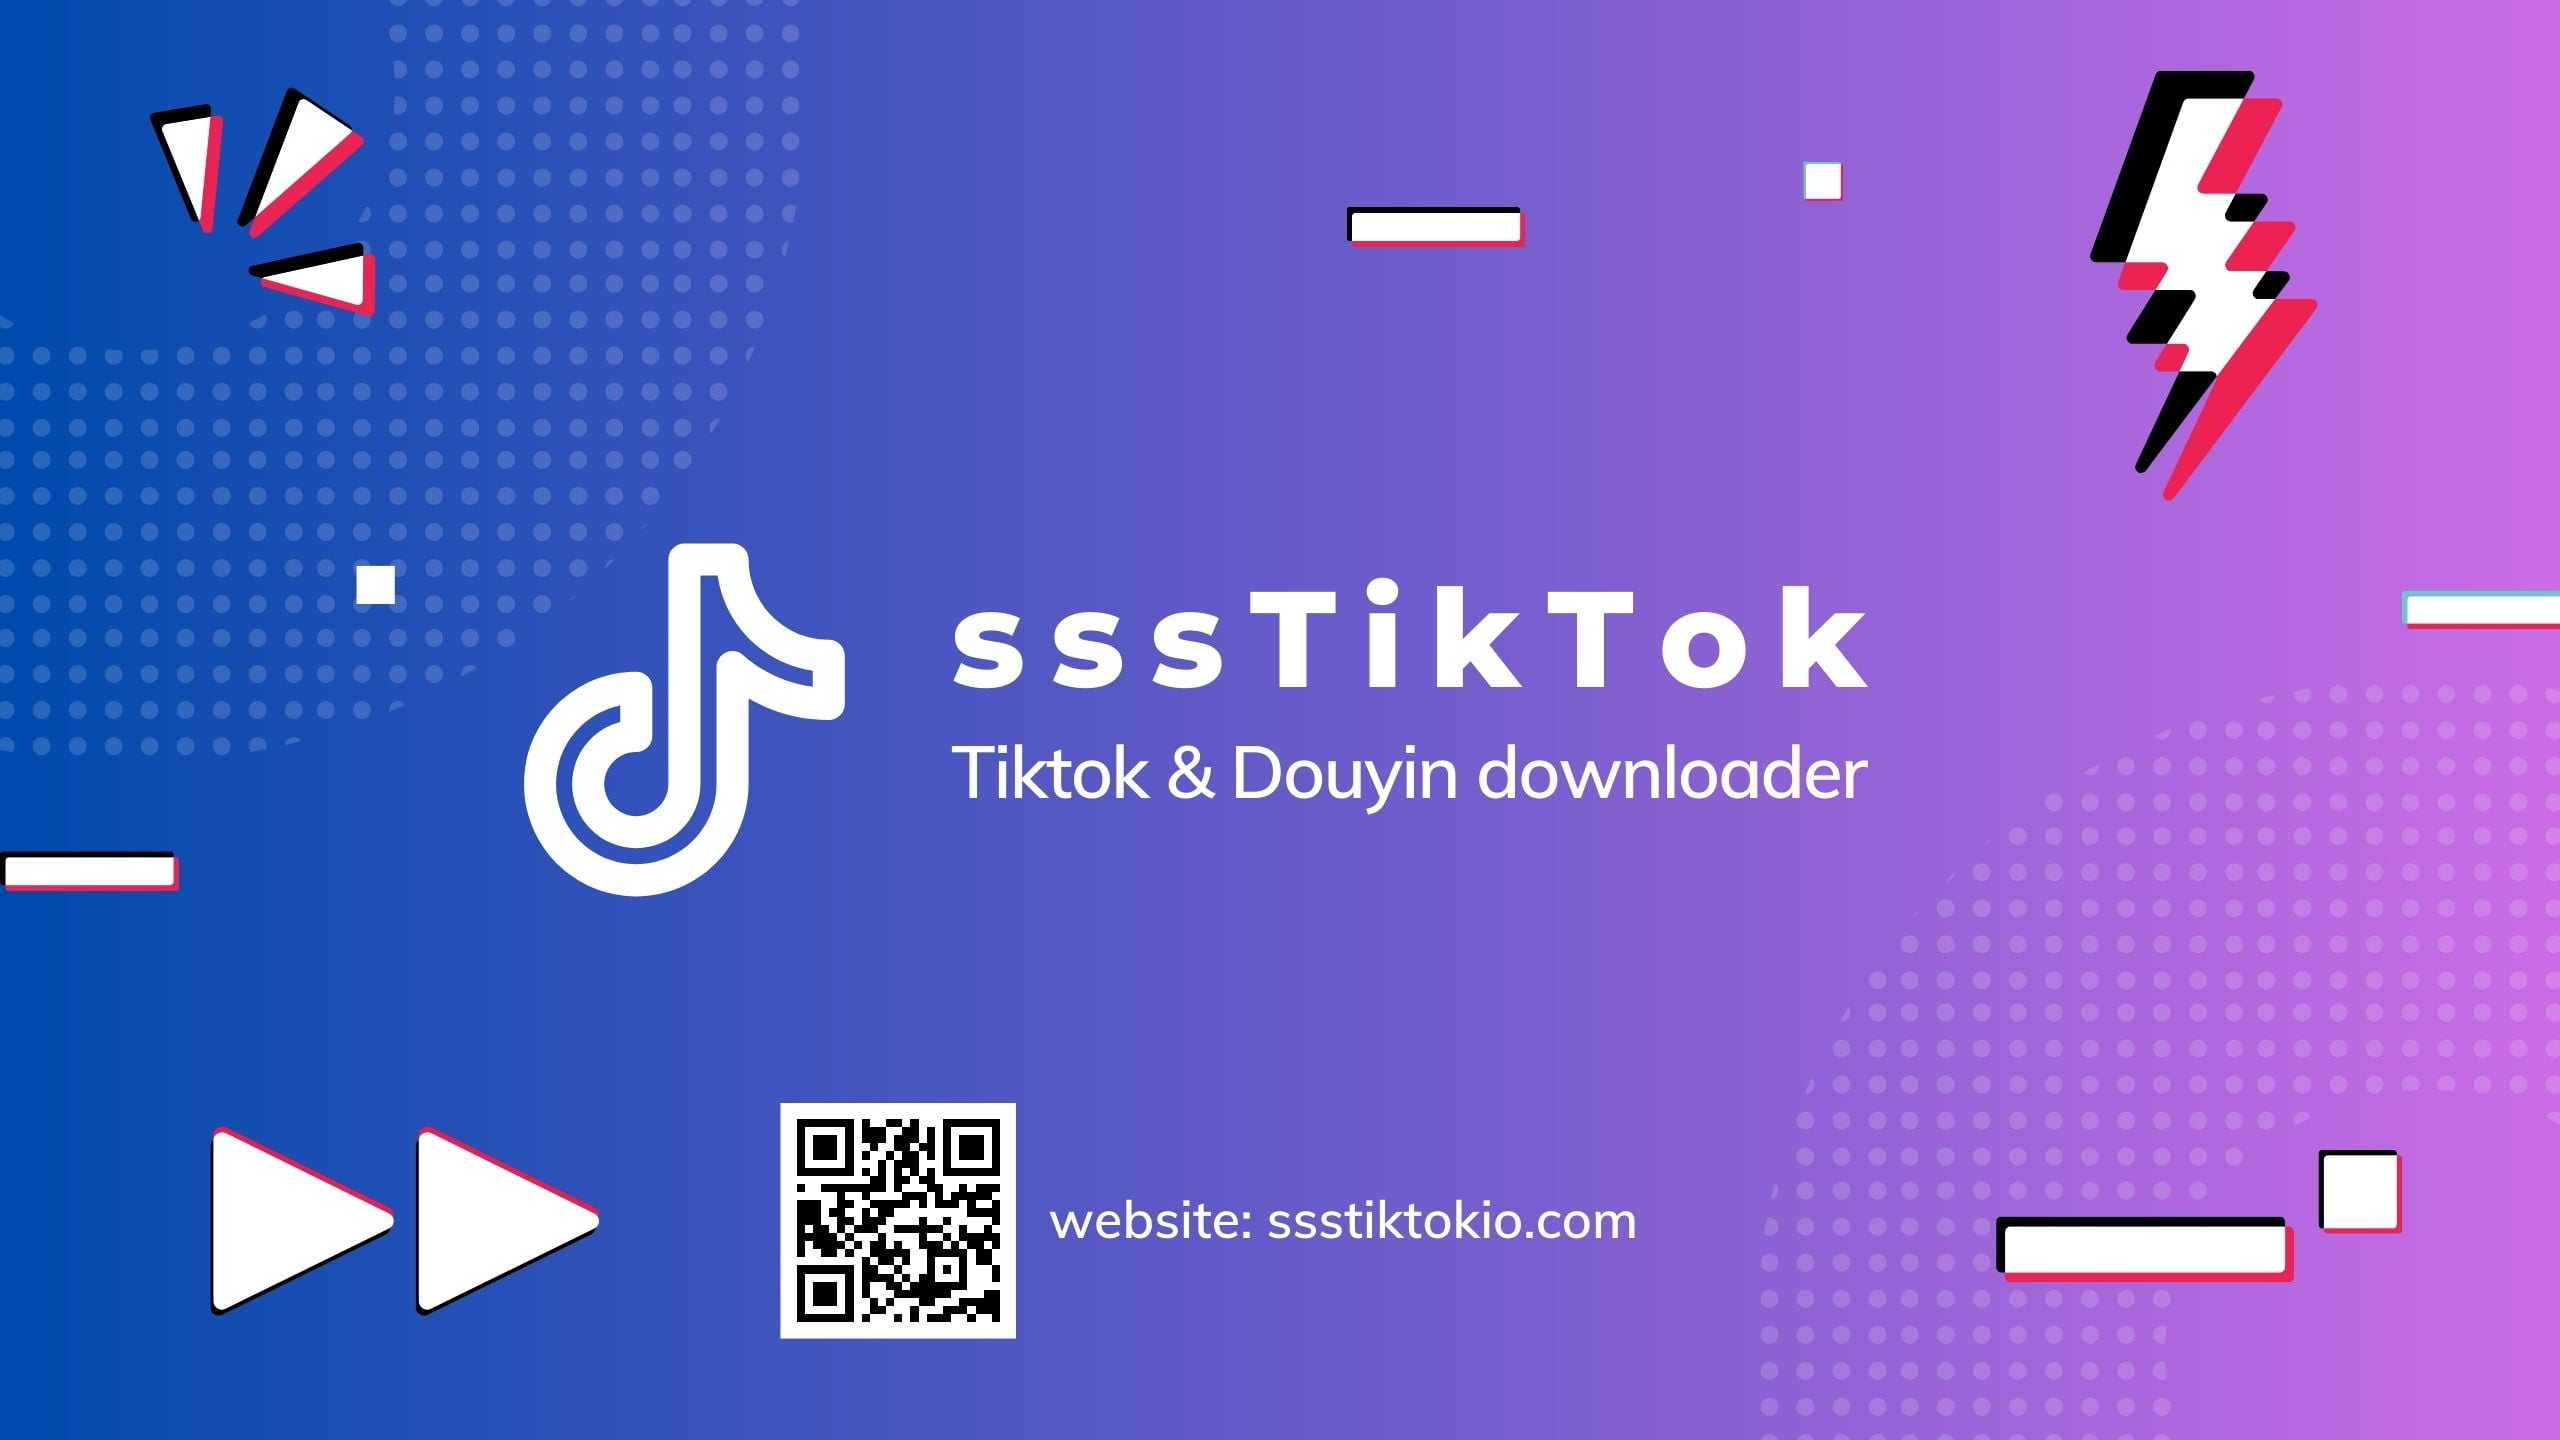 sssTiktok - Công cụ tải video Tiktok trực tuyến miễn phí